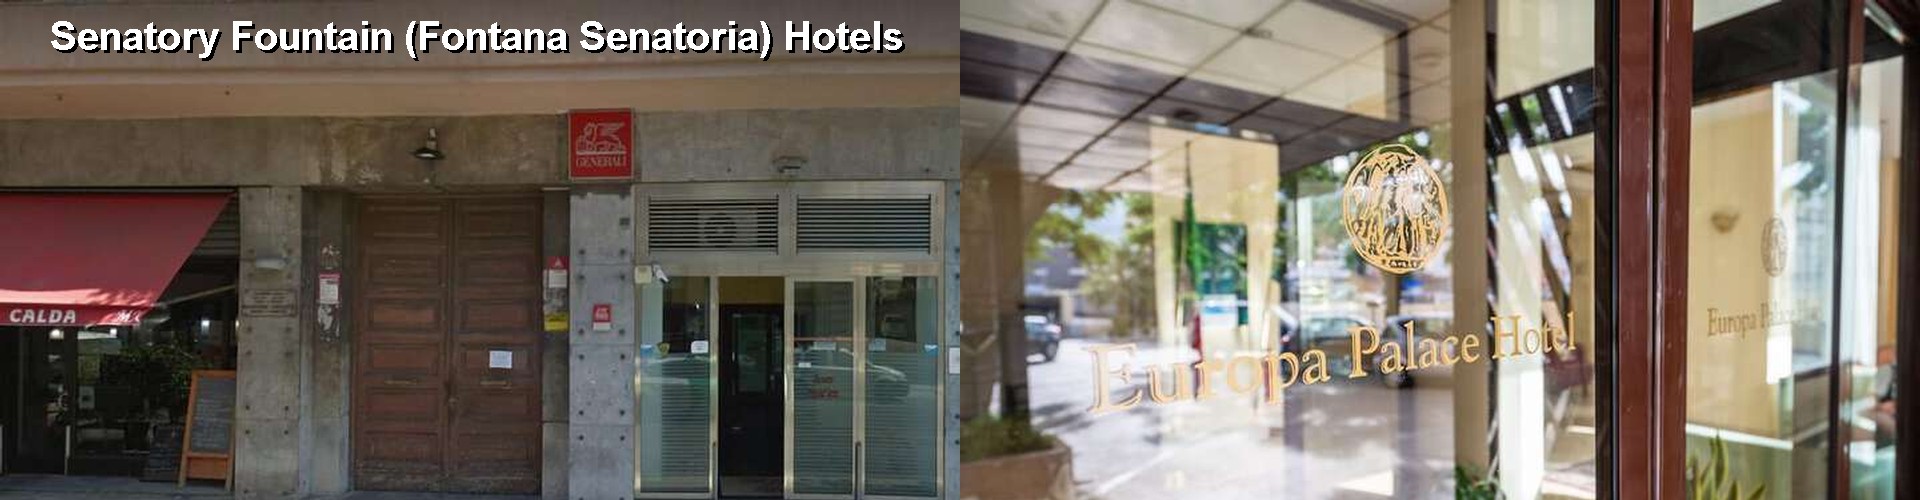 5 Best Hotels near Senatory Fountain (Fontana Senatoria)